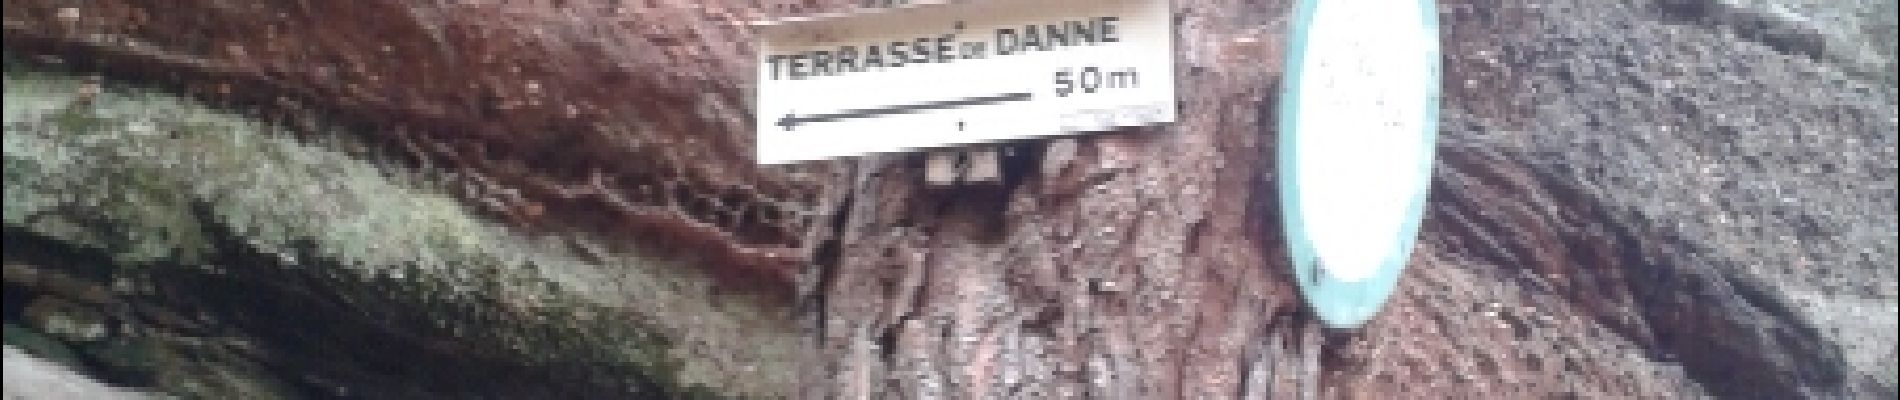 POI Dann und Vierwinden - terrasse de danne - Photo